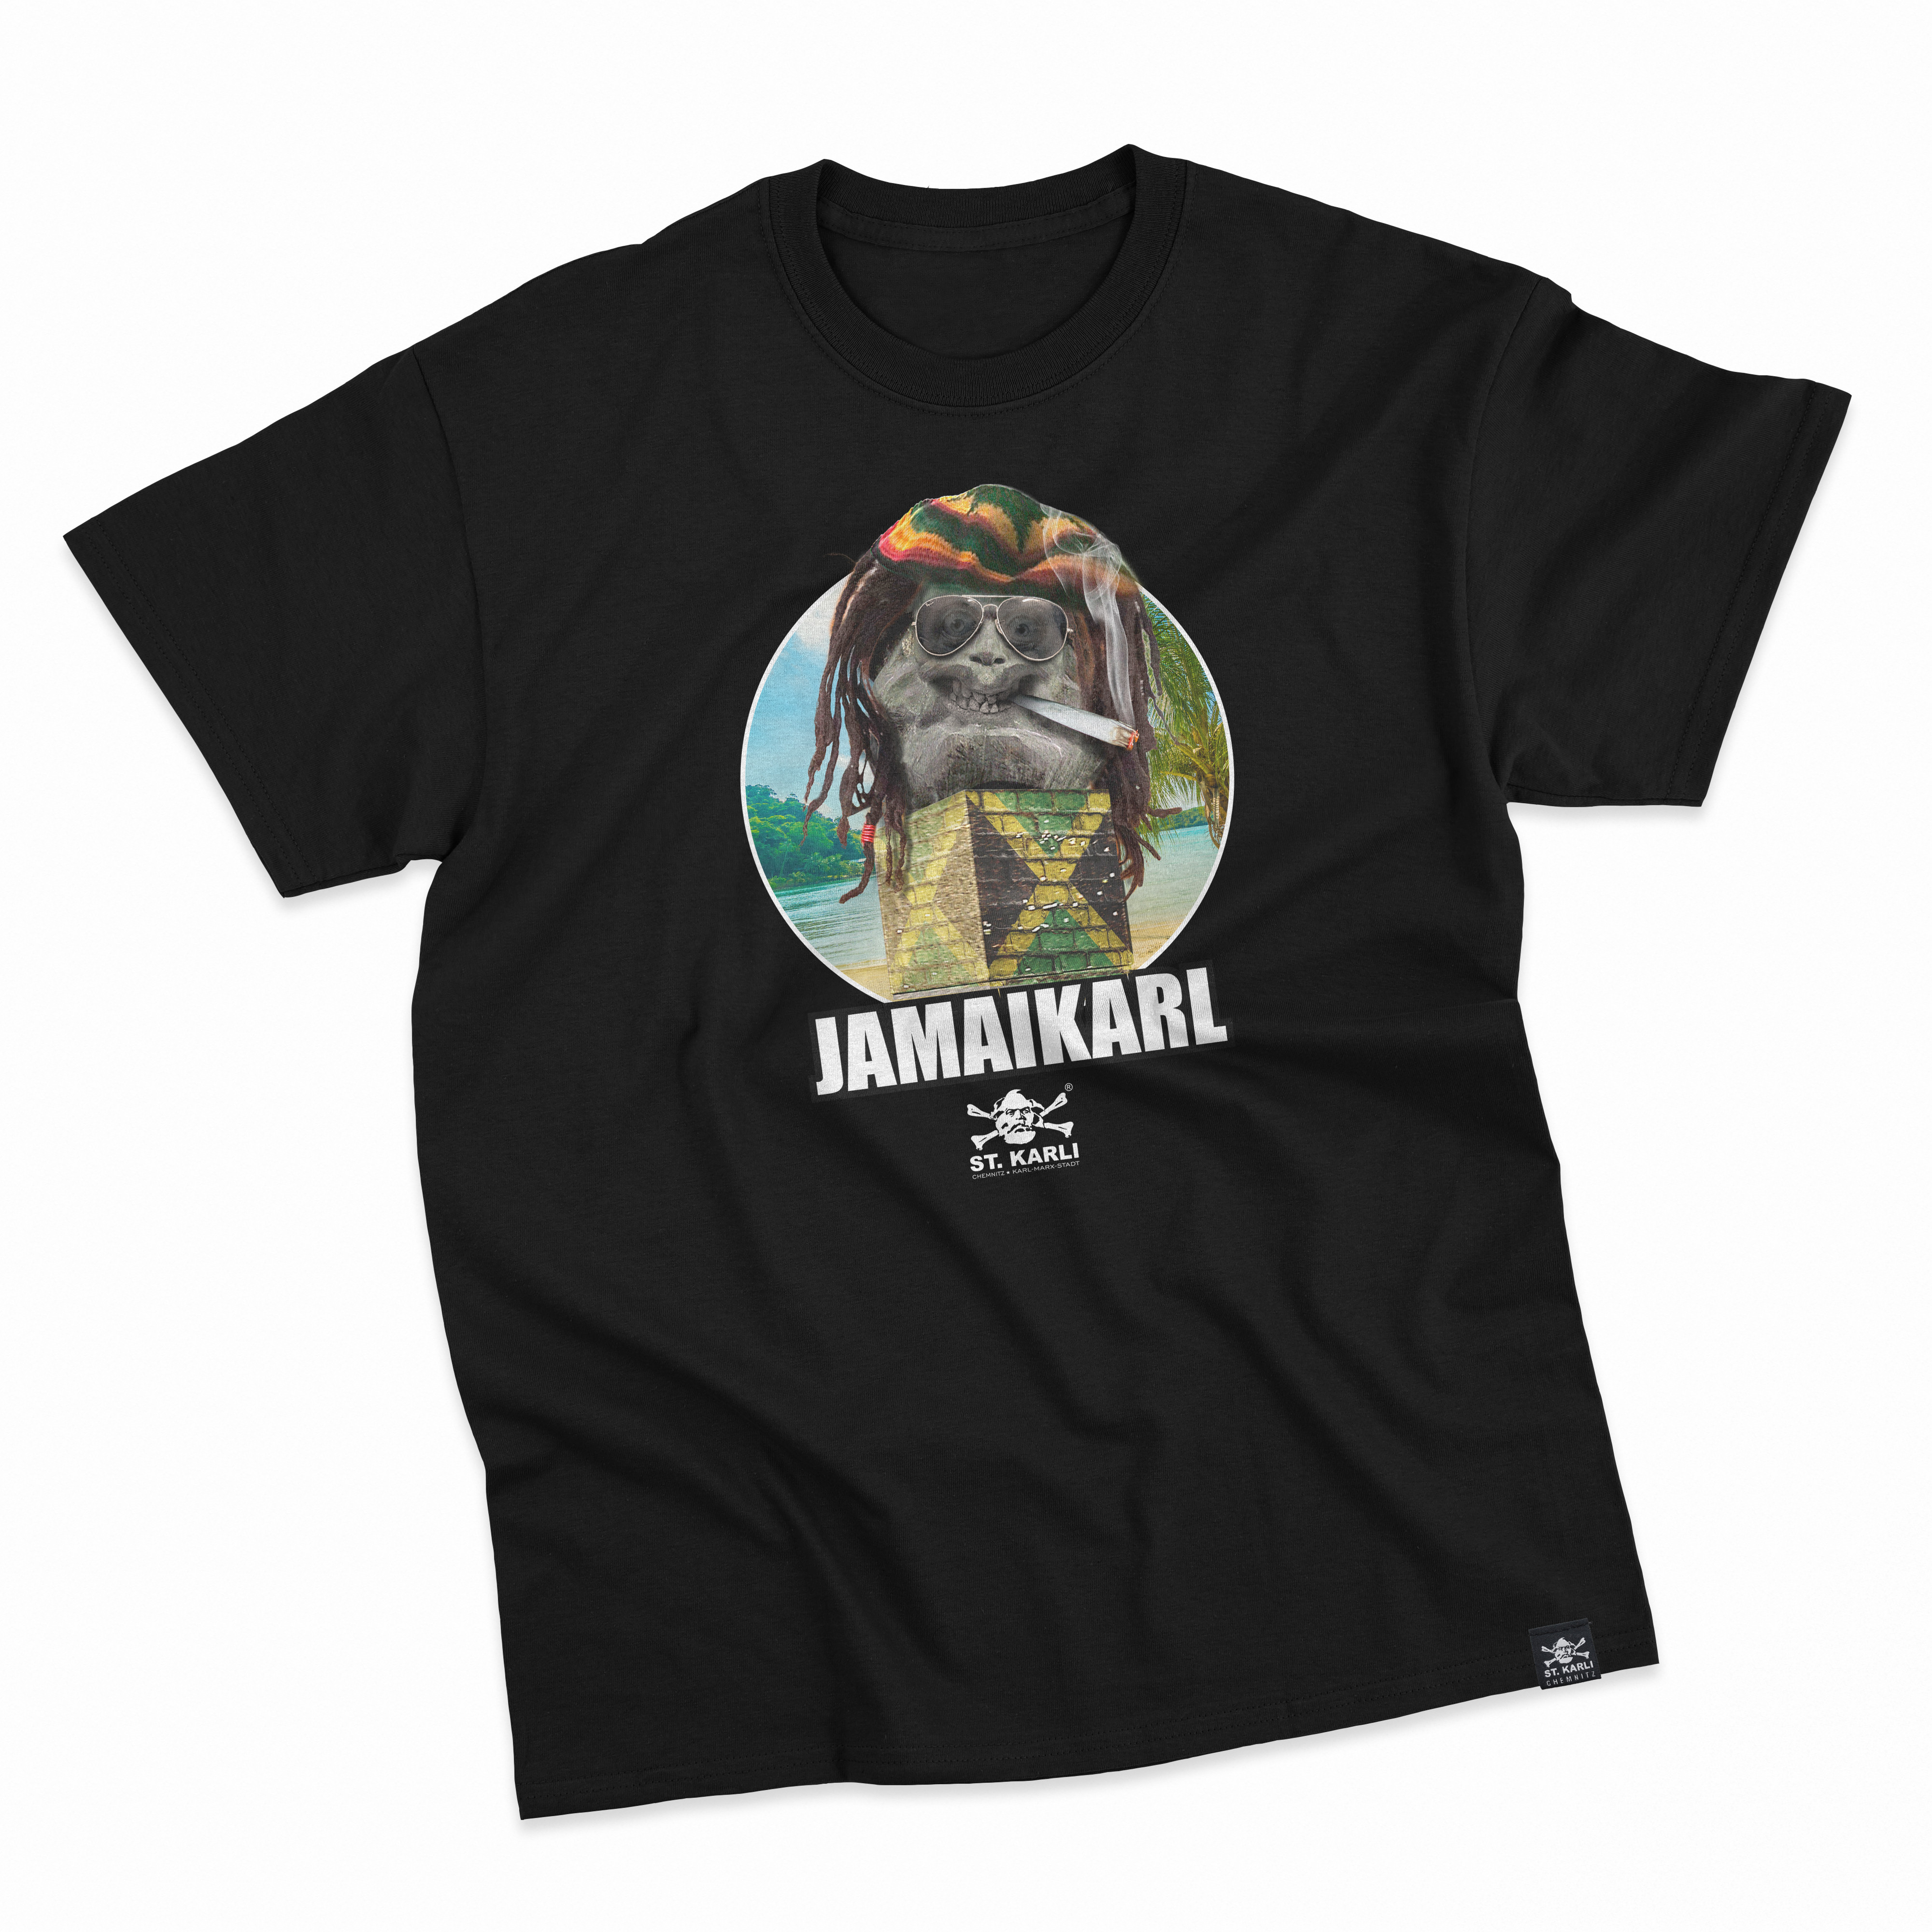 St. Karli T-Shirt "JAMAIKARL"